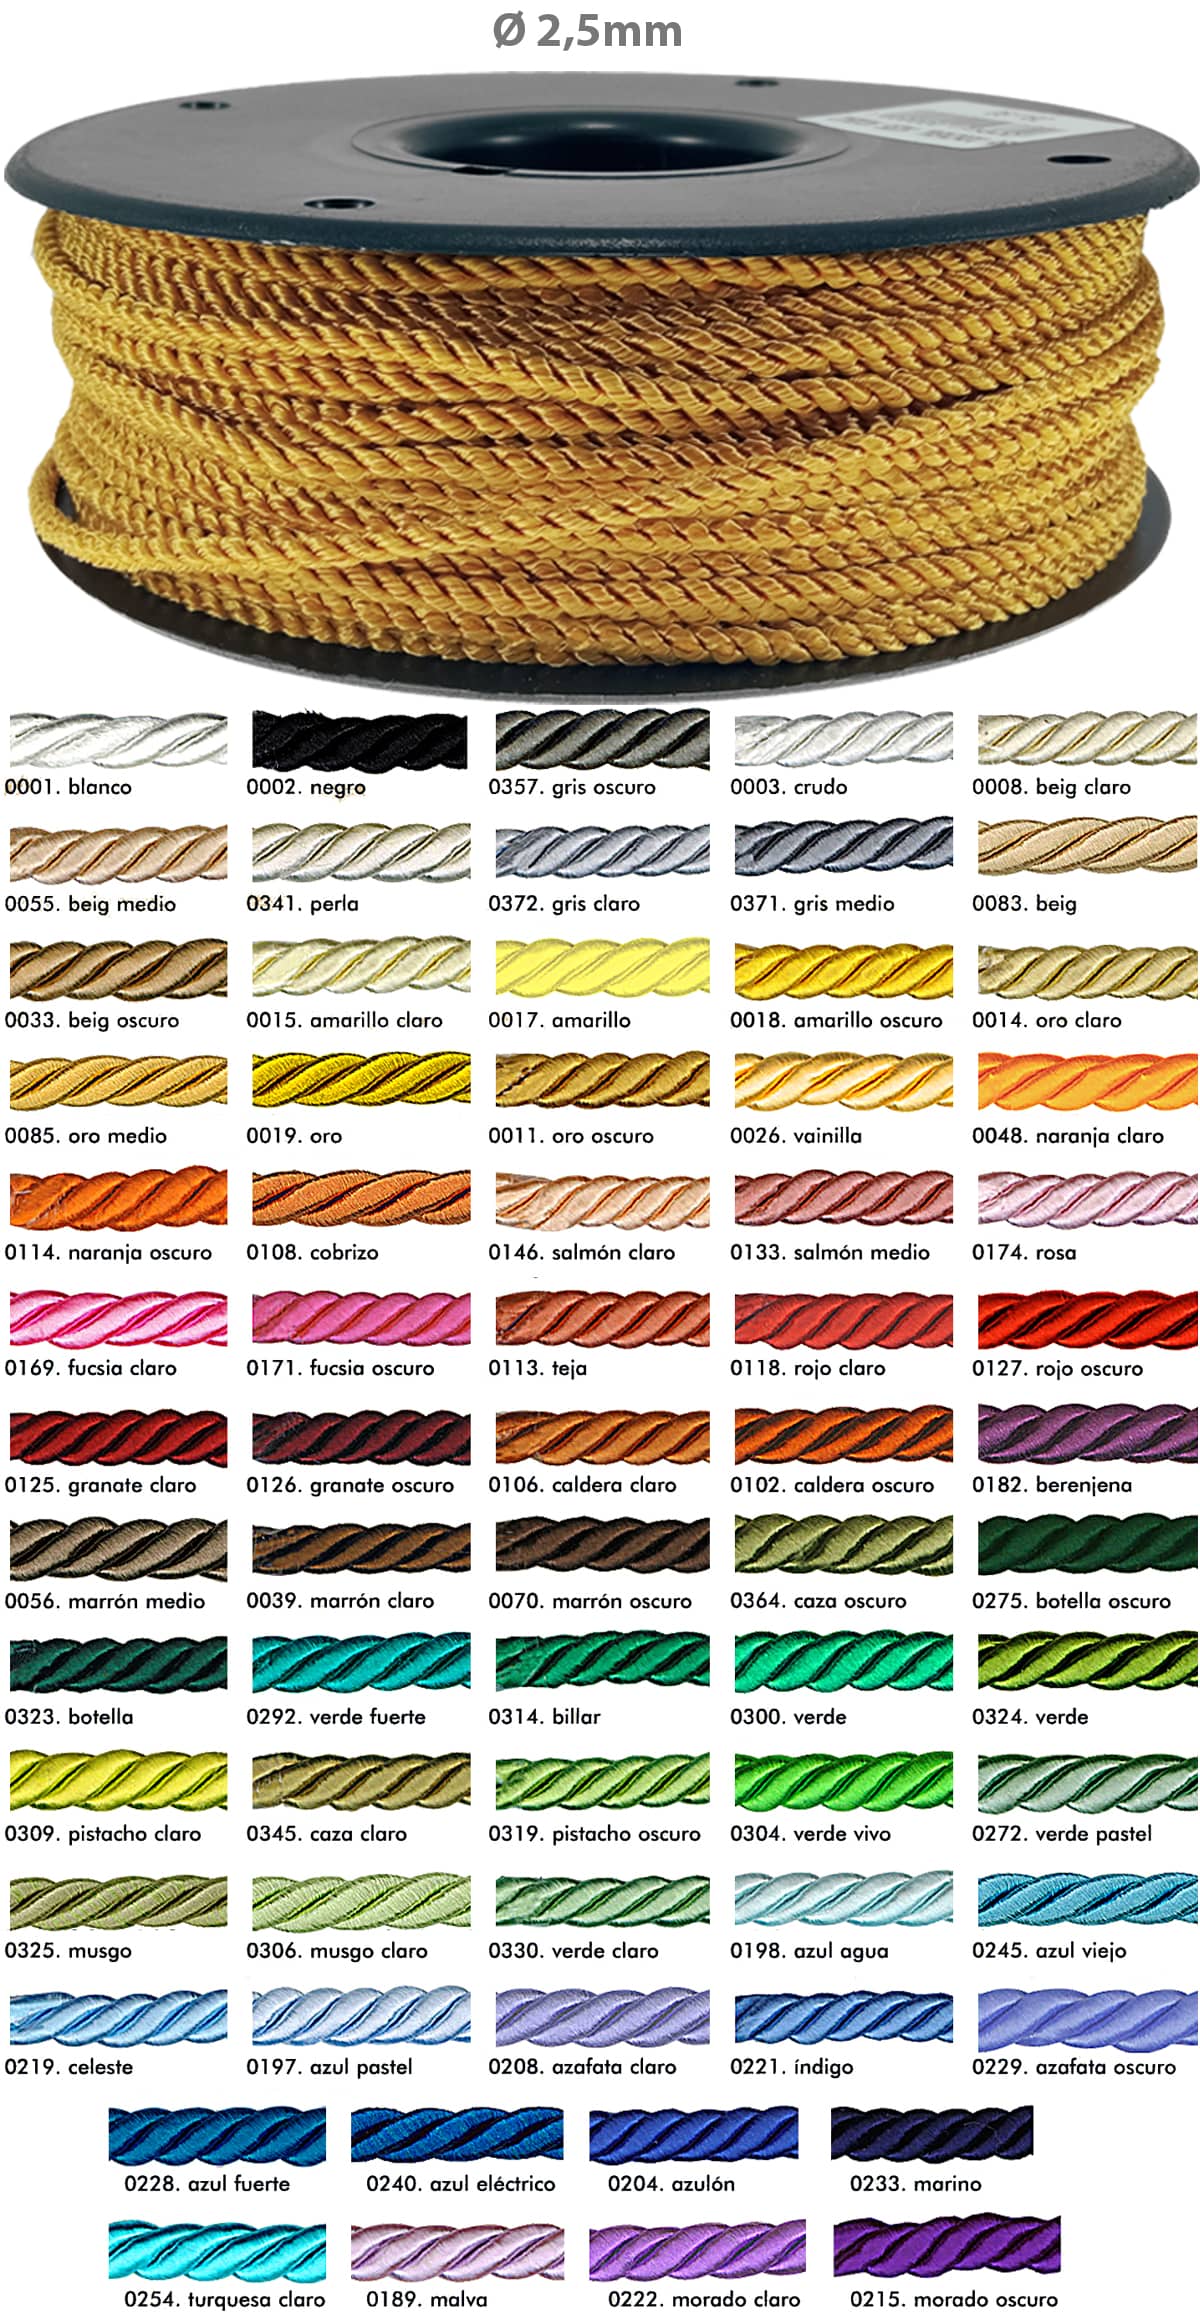 Carta Colores para el Cordón Seda fino, también llamado cordón rayón o cordón trenzado de raso.